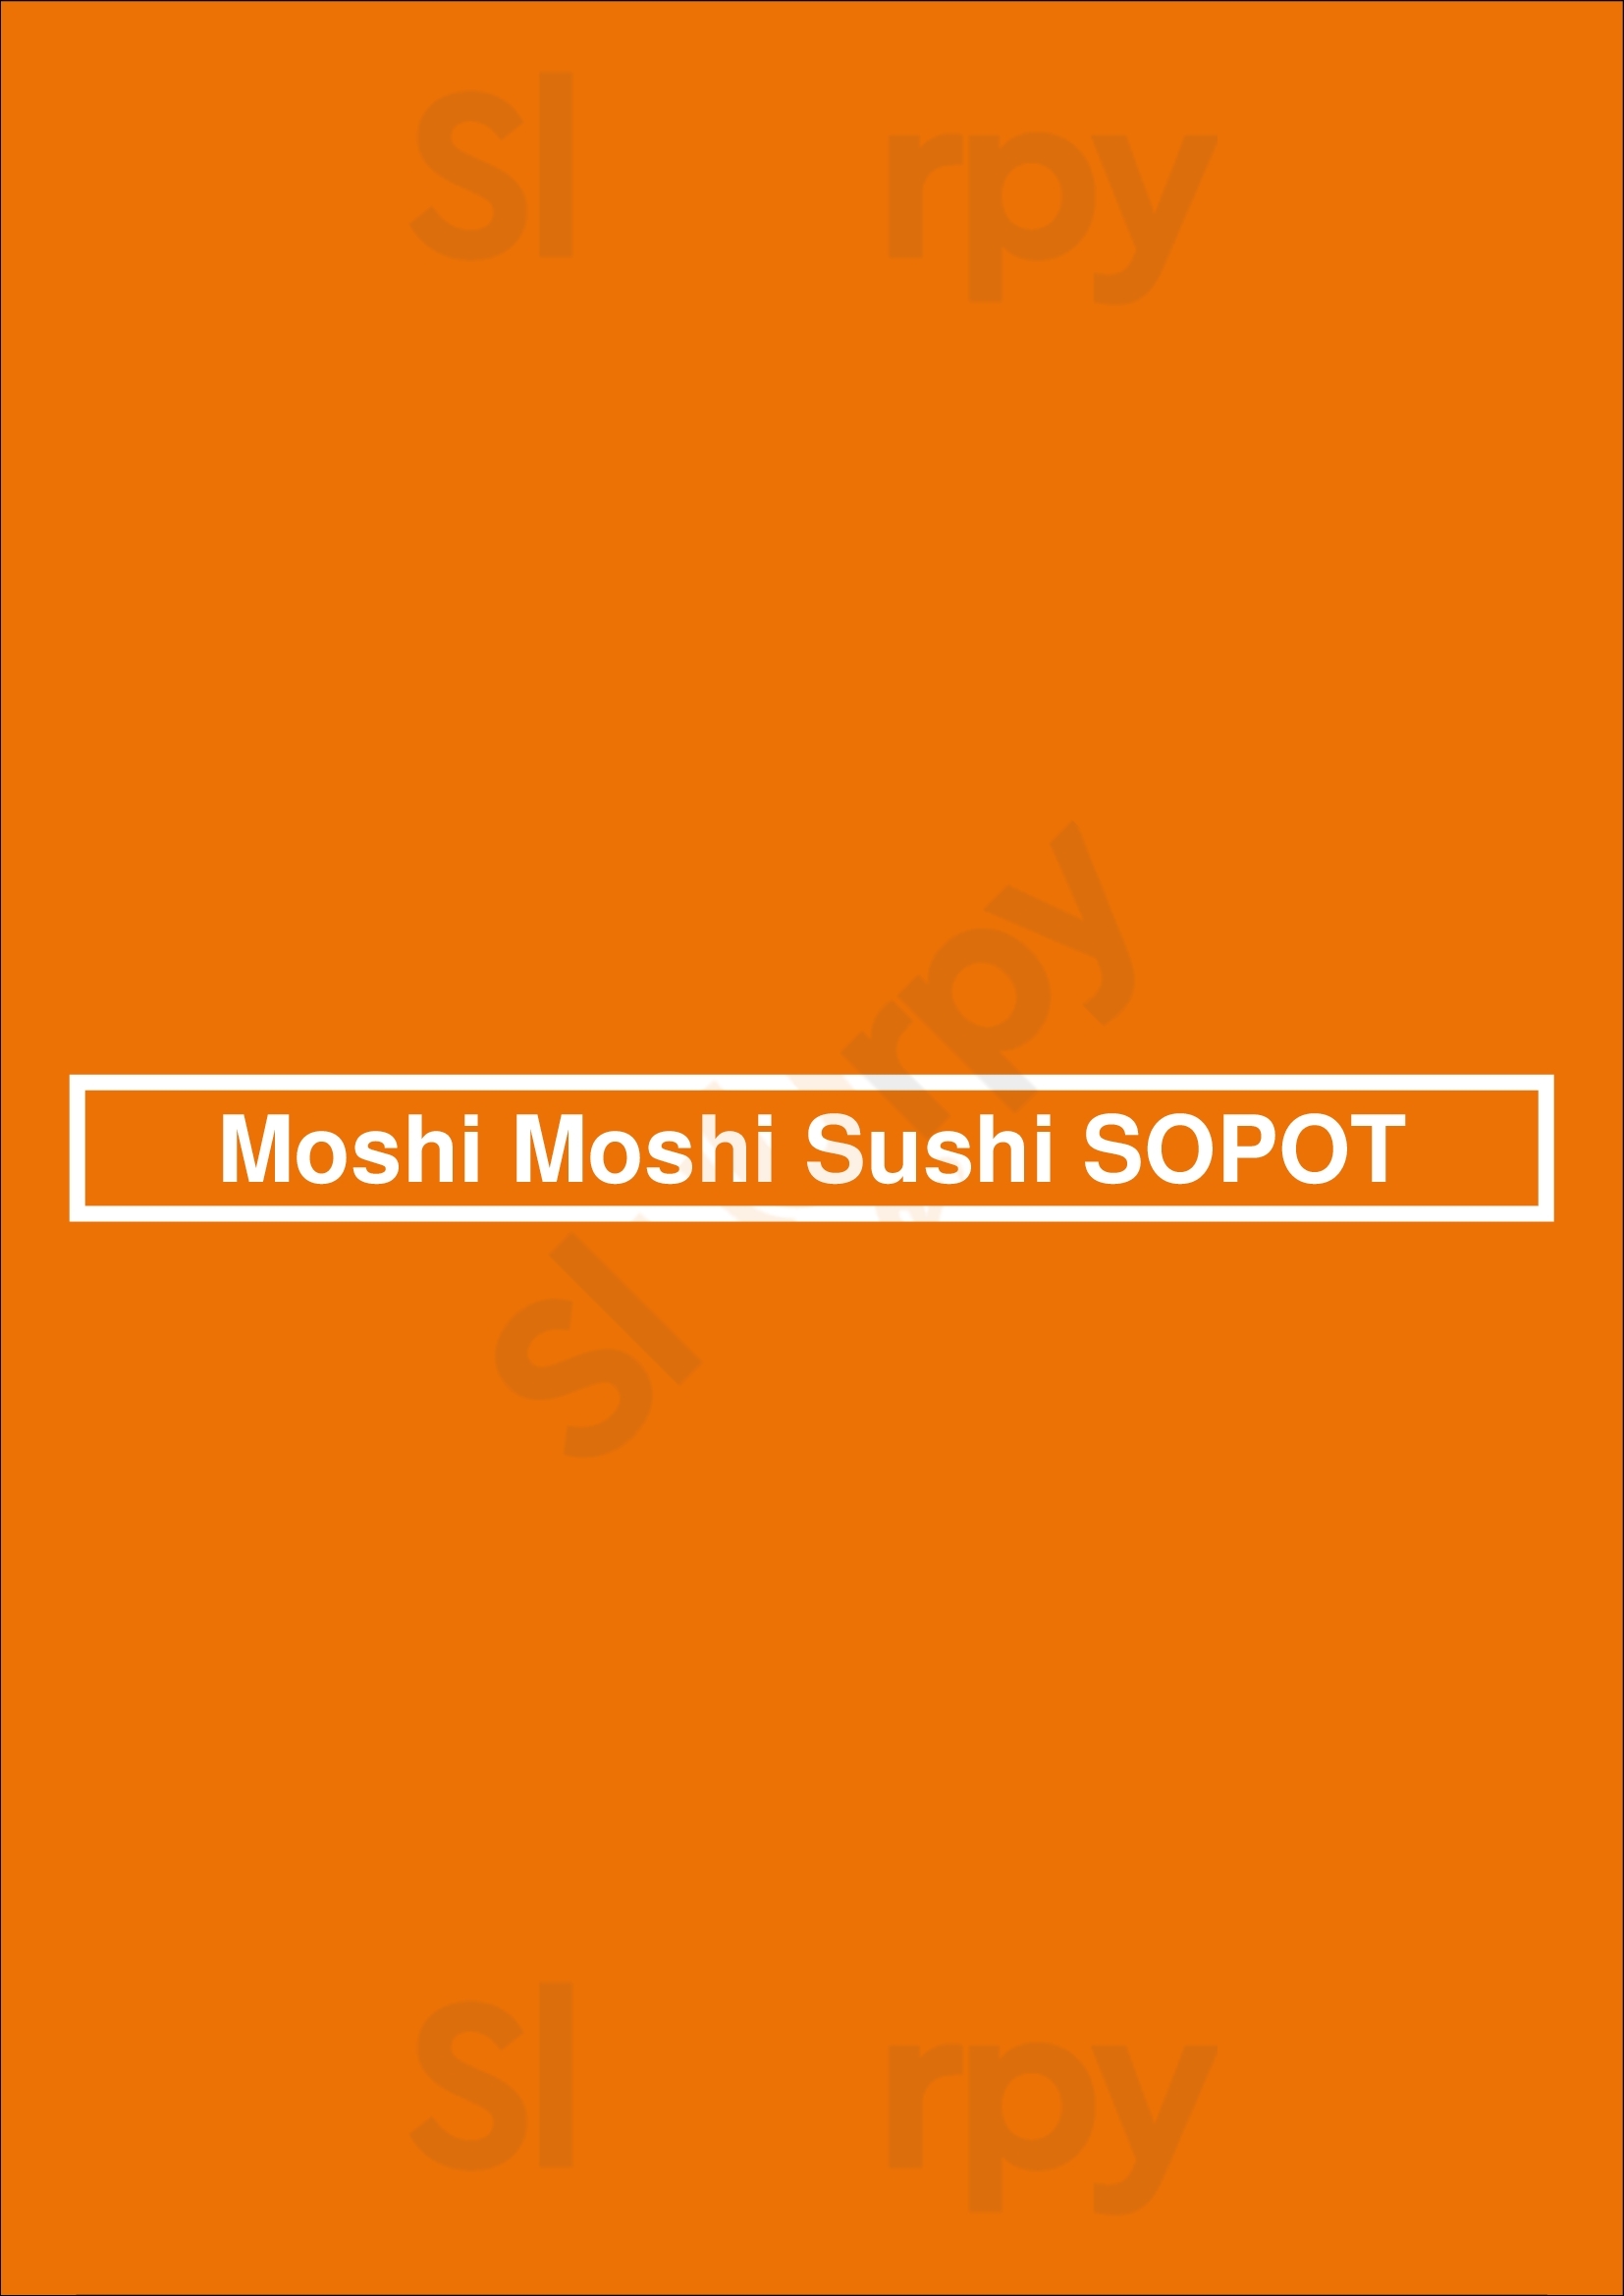 Moshi Moshi Sushi Sopot Sopot Menu - 1